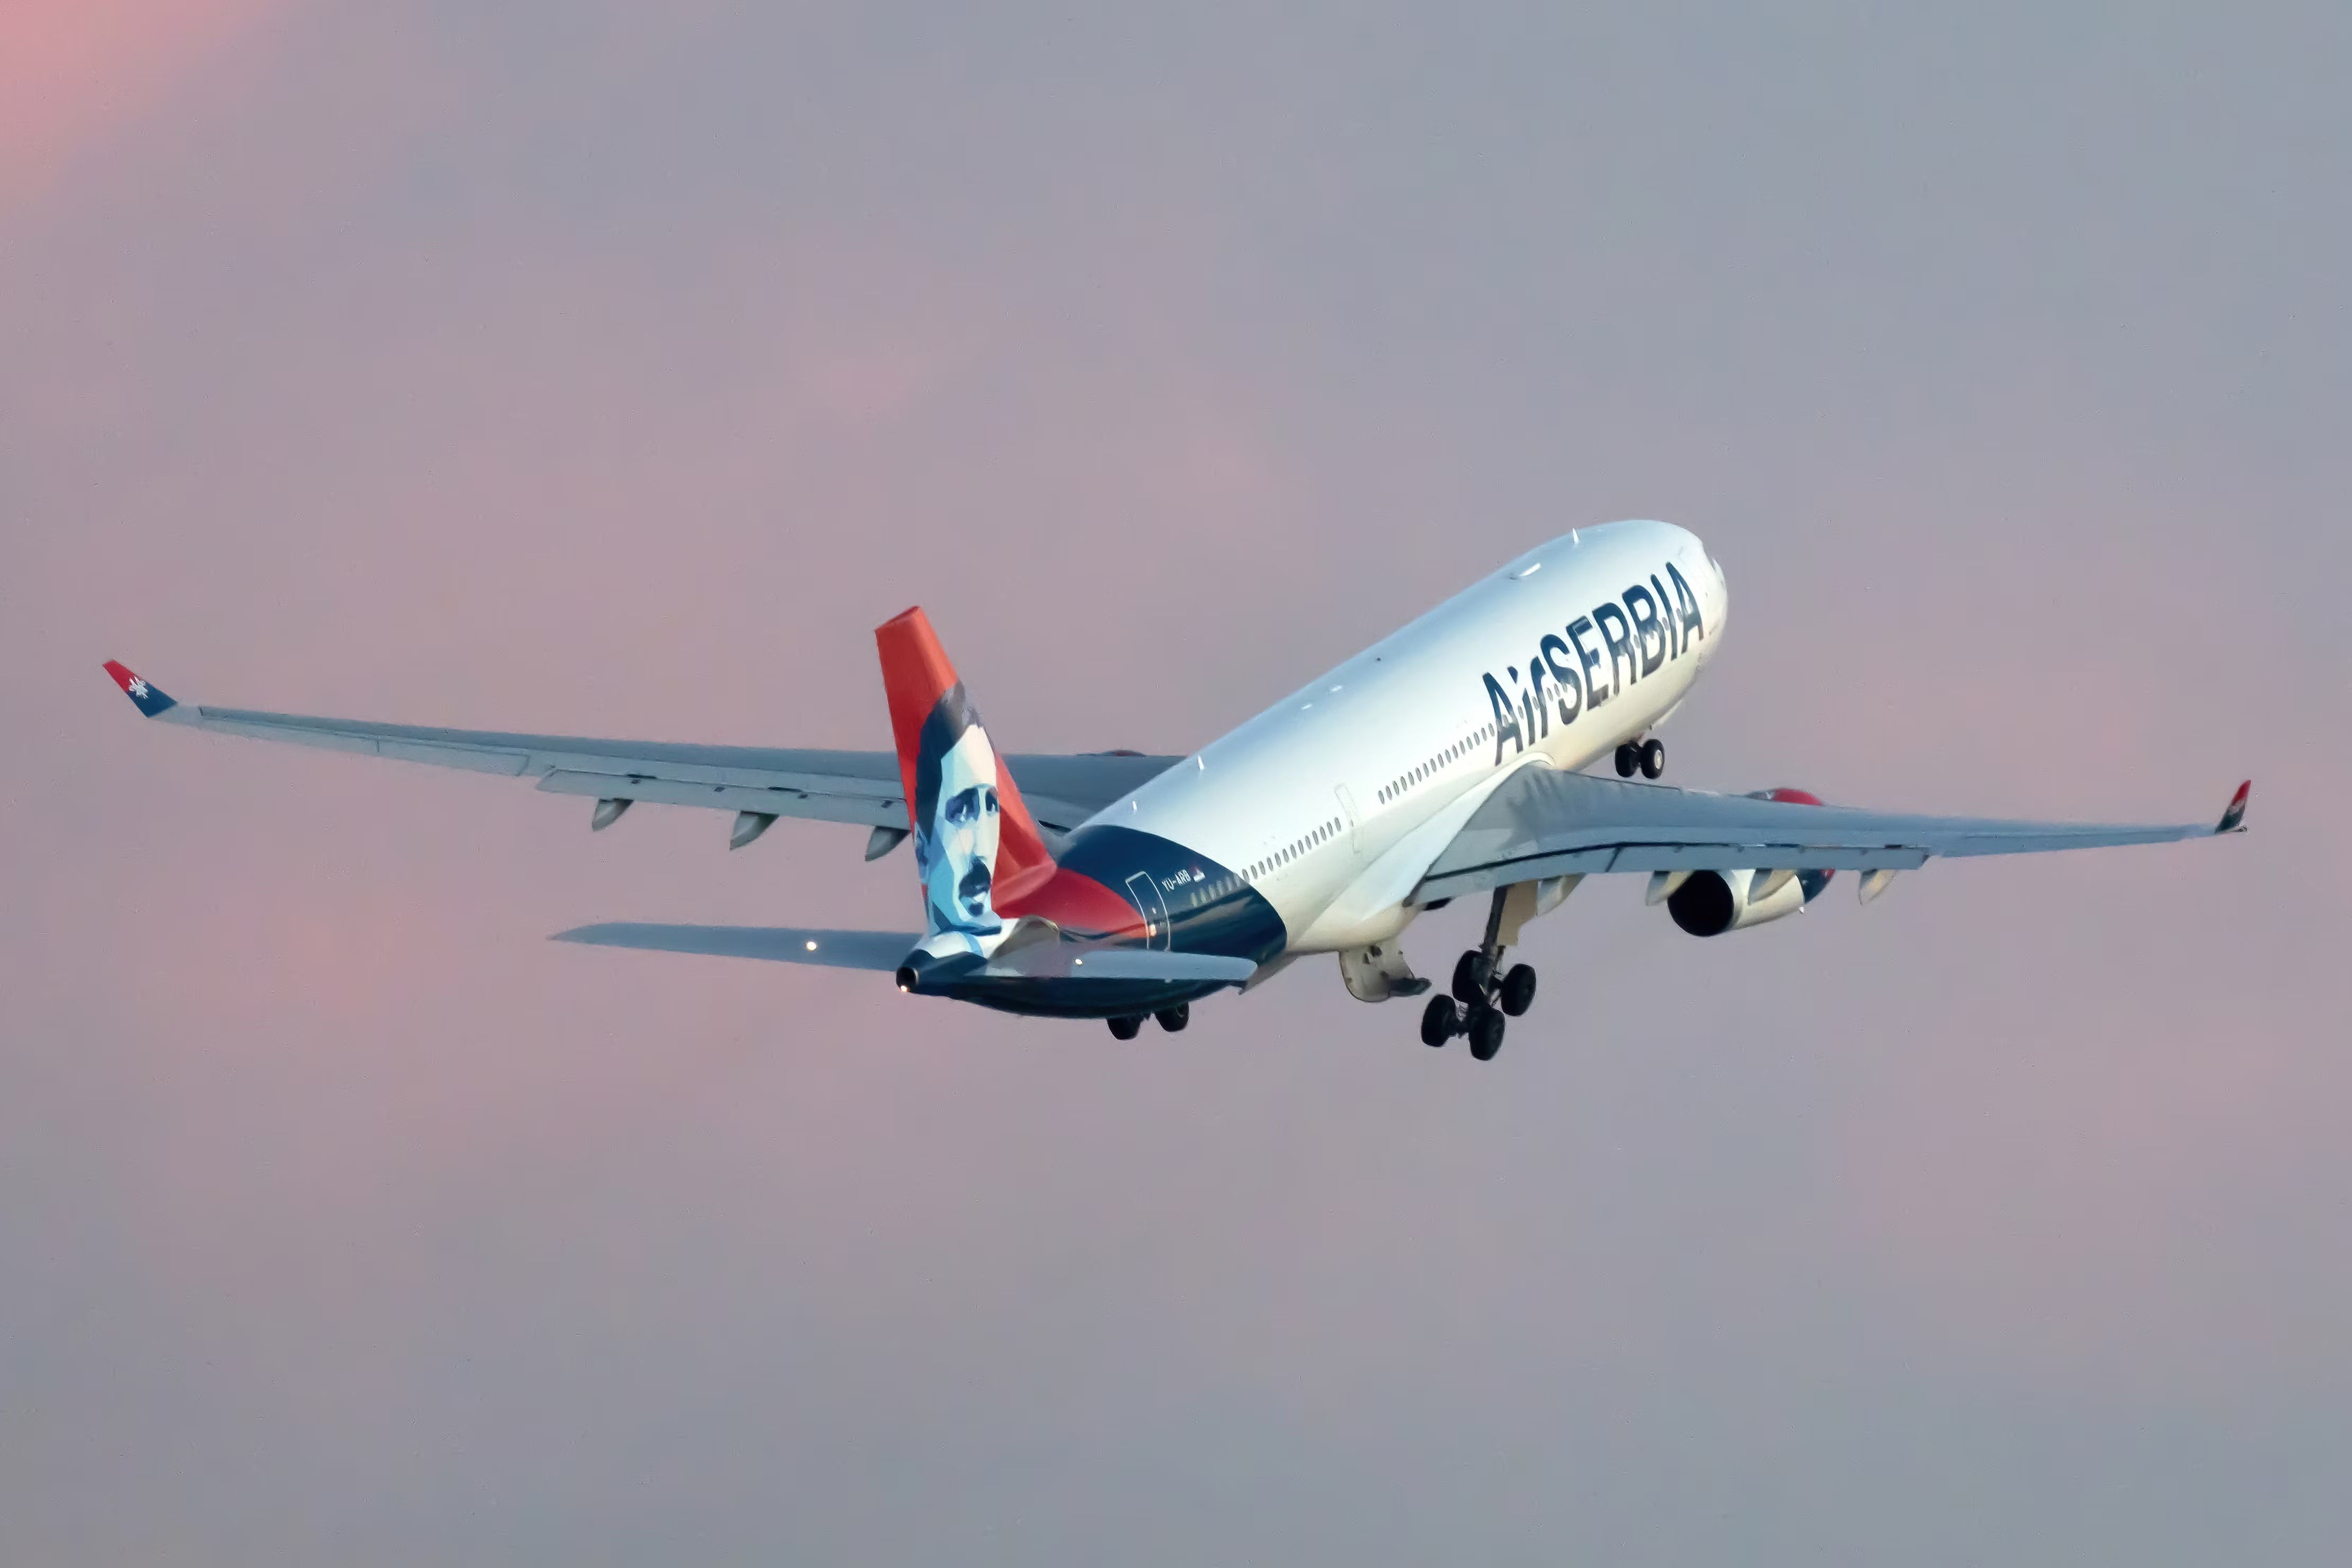 Air Serbia A330-200 taking off